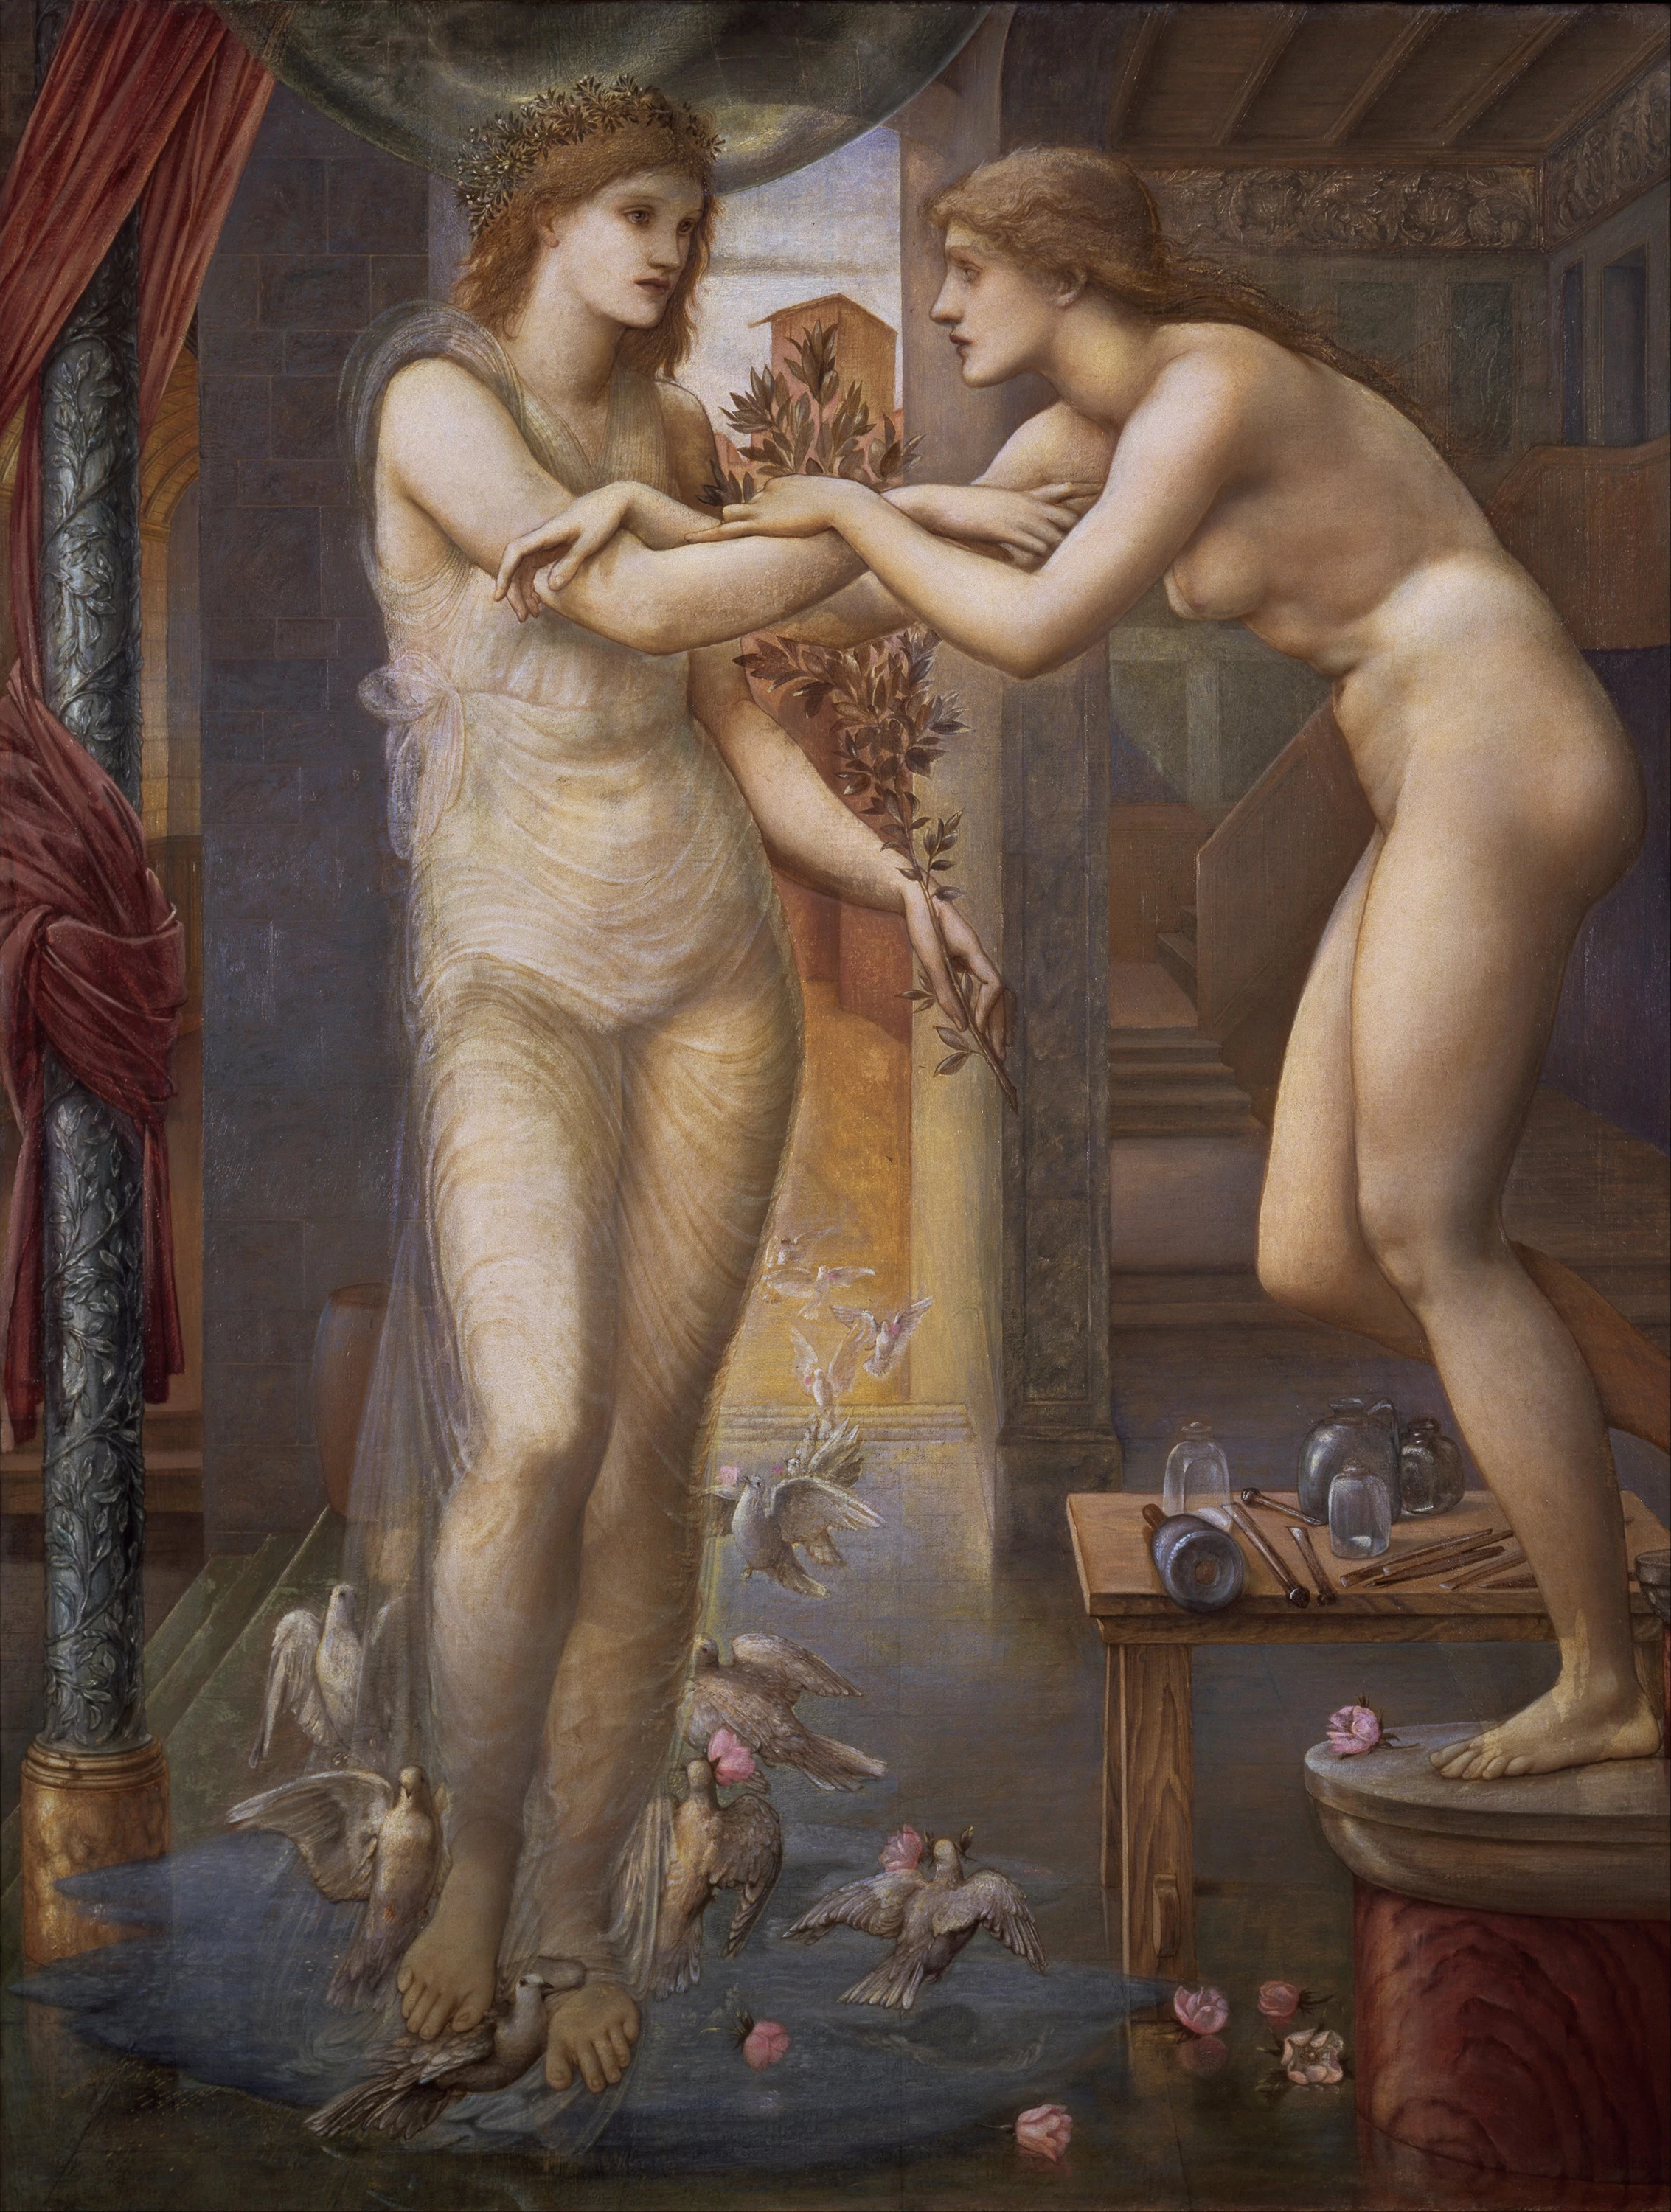 Pygmalion and the Image — The Godhead Fires, Edward Burne-Jones